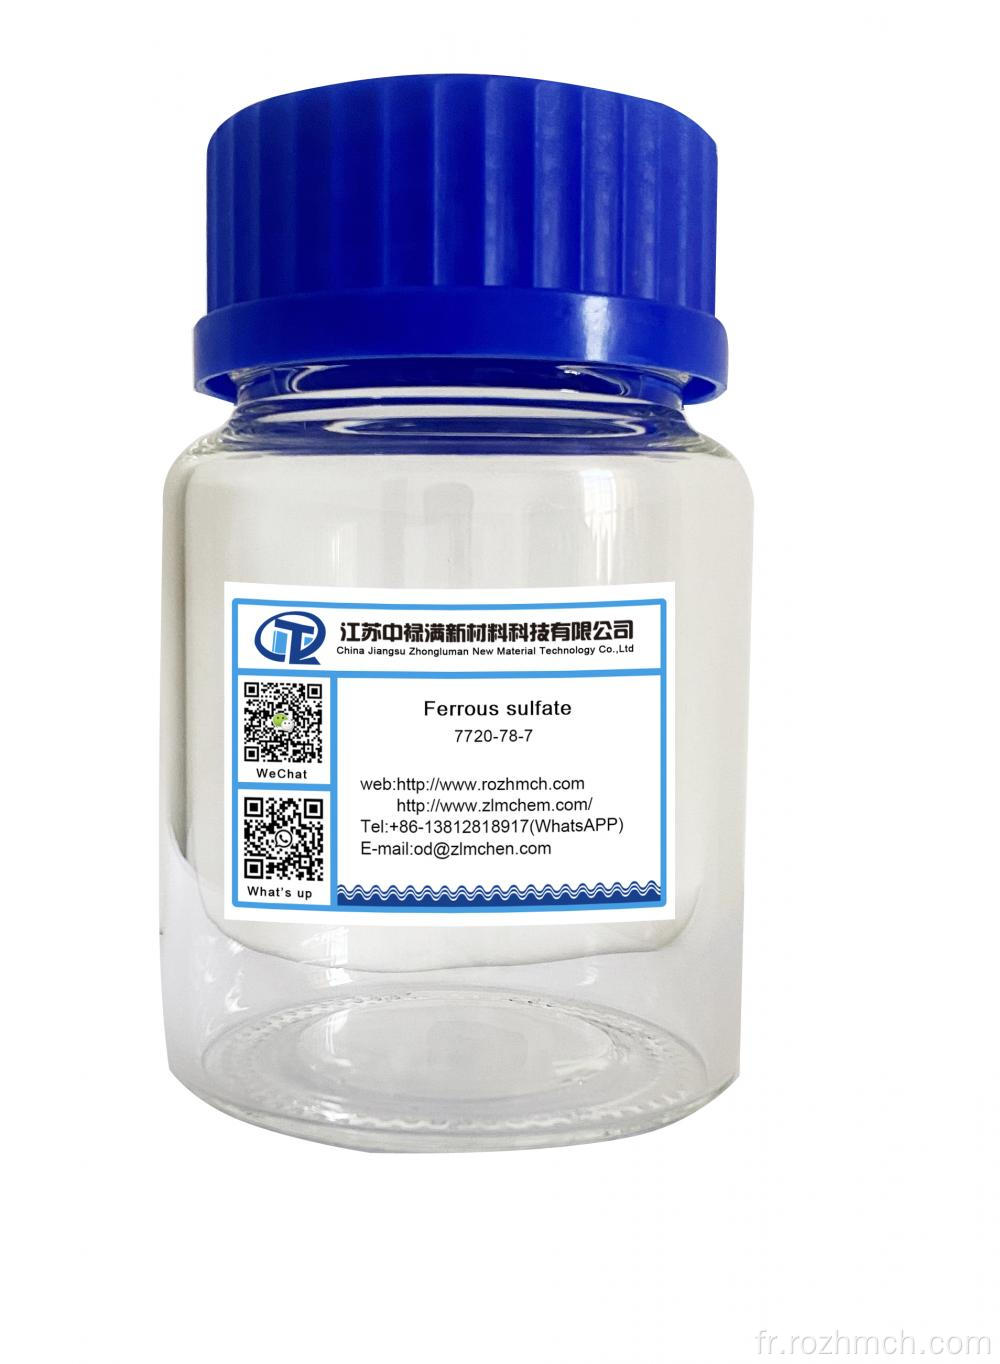 Sulfate ferreux CAS no 7720-78-7